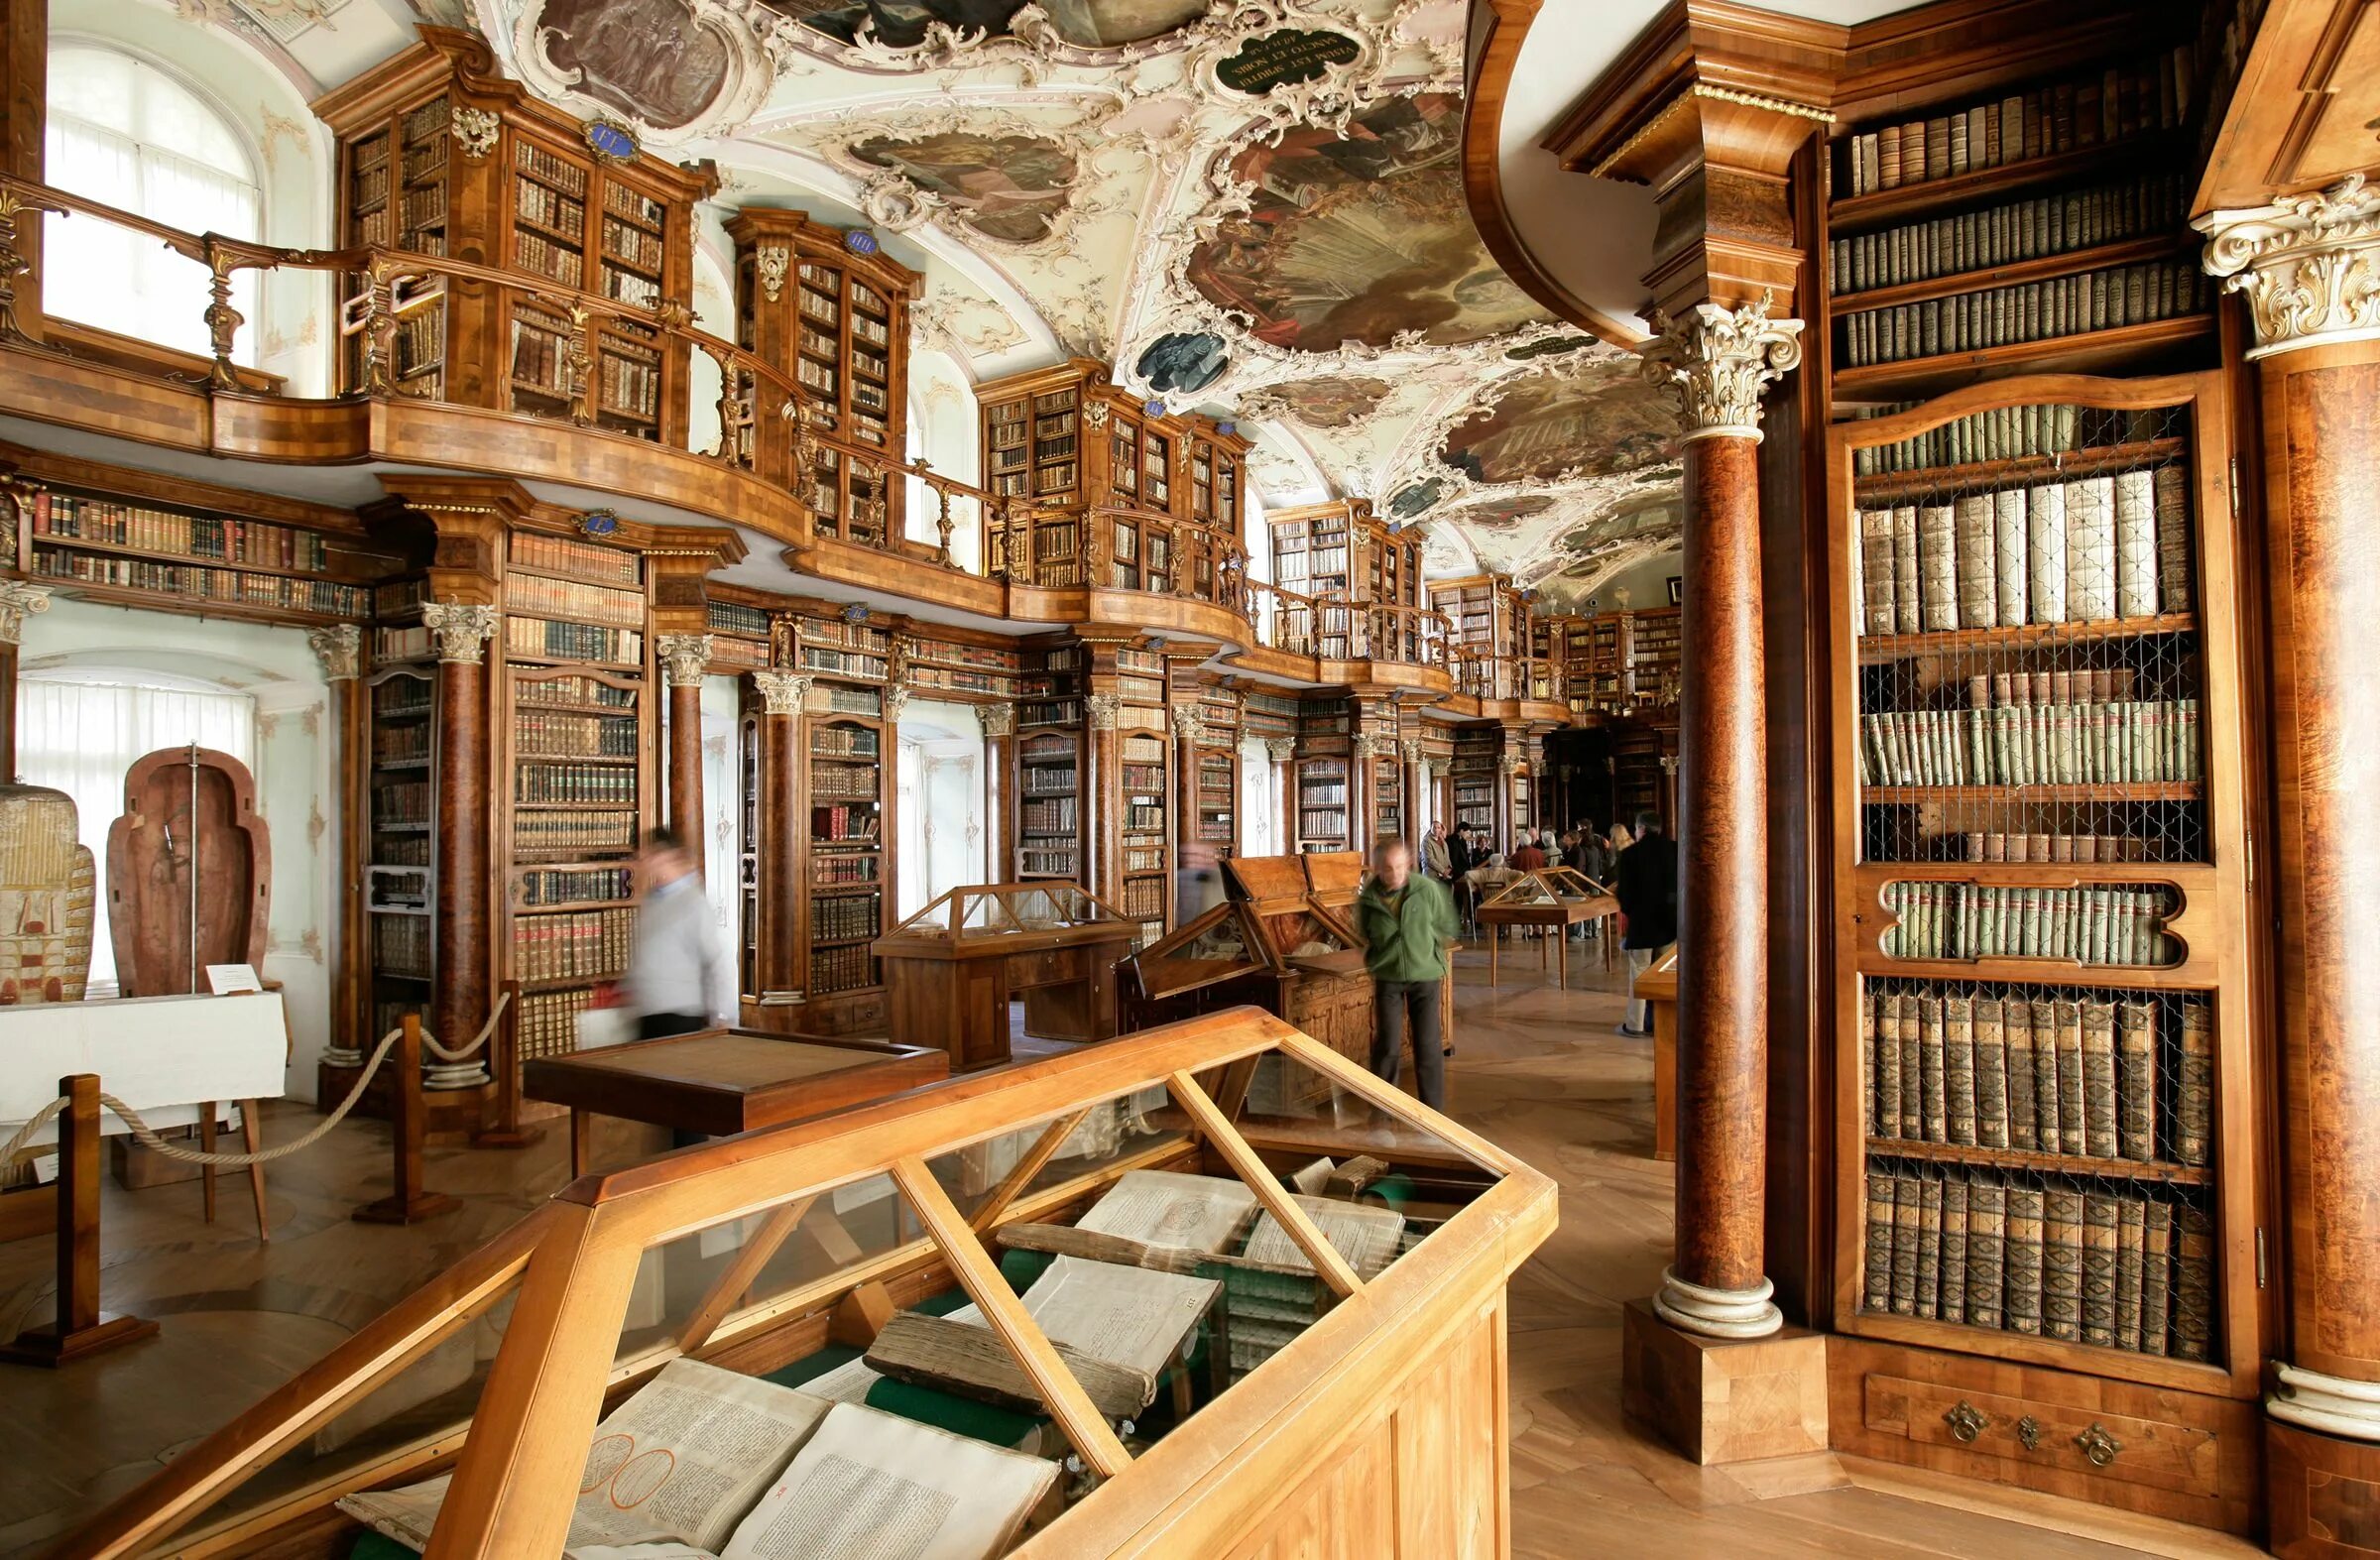 Библиотека librams ru. Библиотека монастыря Святого Галла. Библиотека аббатства Санкт-Галлен. Библиотека монастыря Святого Галла в Швейцарии. Библиотека аббатства Святого Галла в Швейцарии.